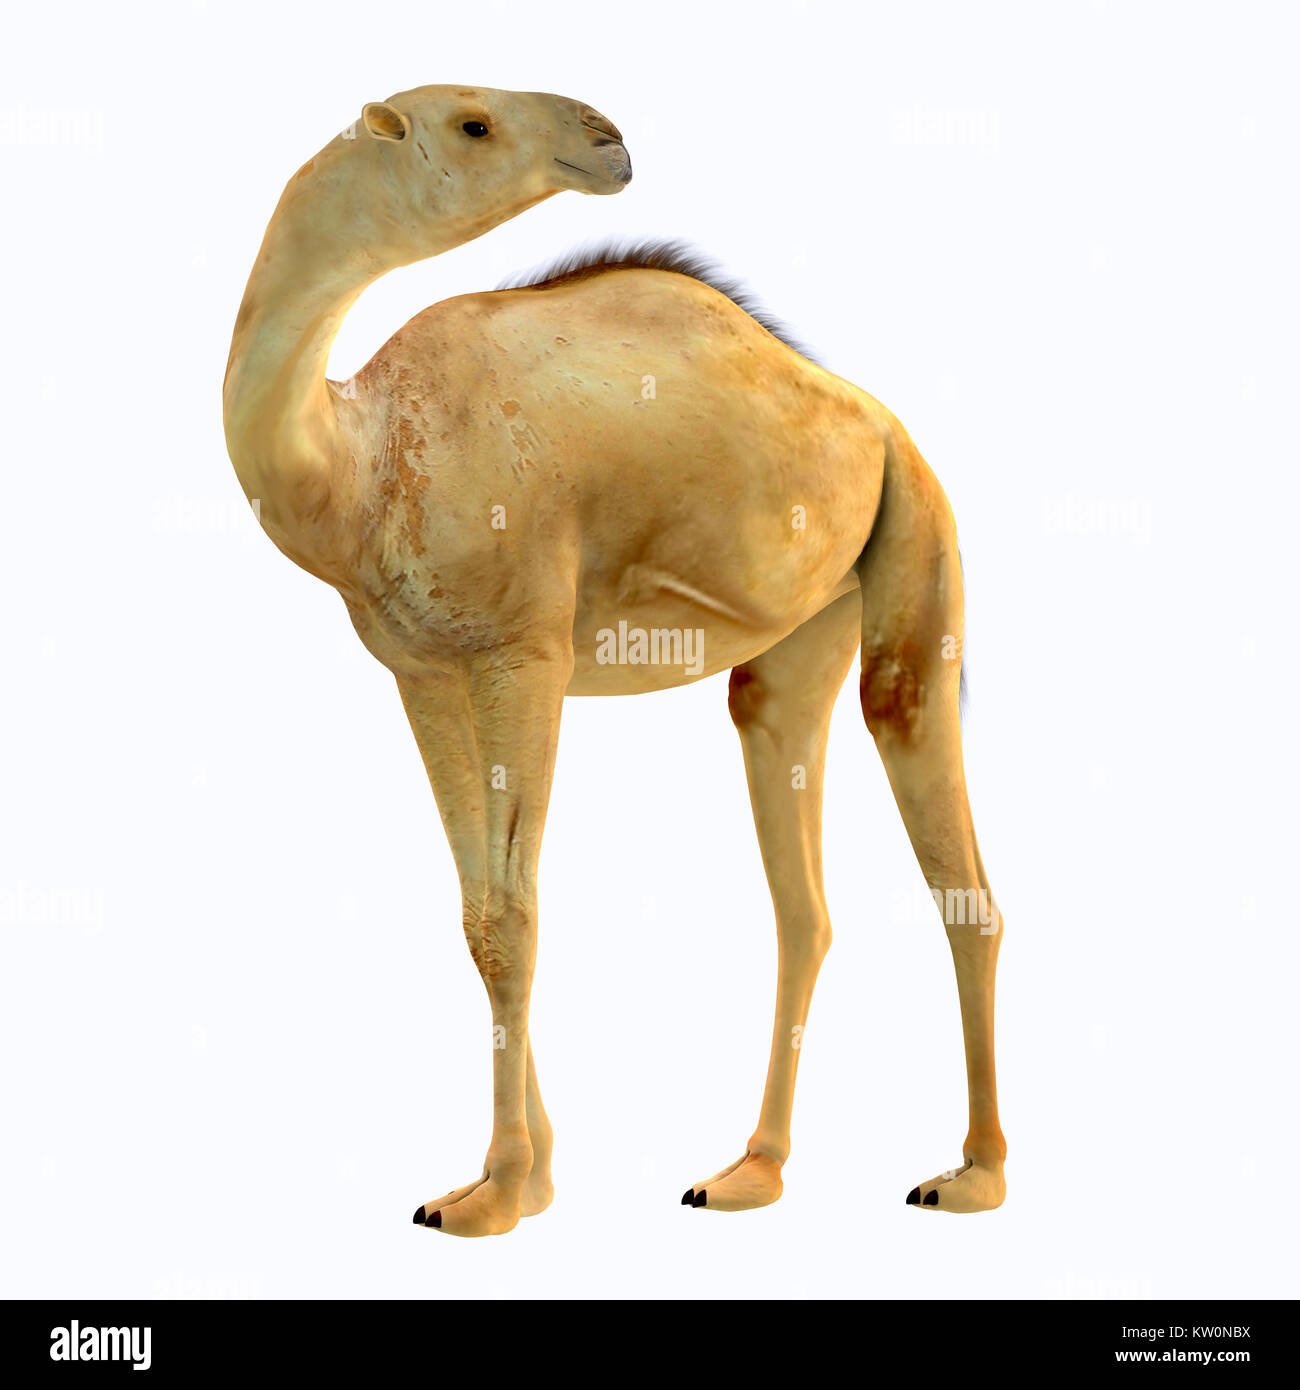 Camelops hesternus Seite Profil - camelops war ein Kamel - Typ pflanzenfressende Tier, das in Nordamerika während des Pleistozäns Zeit gelebt. Stockfoto